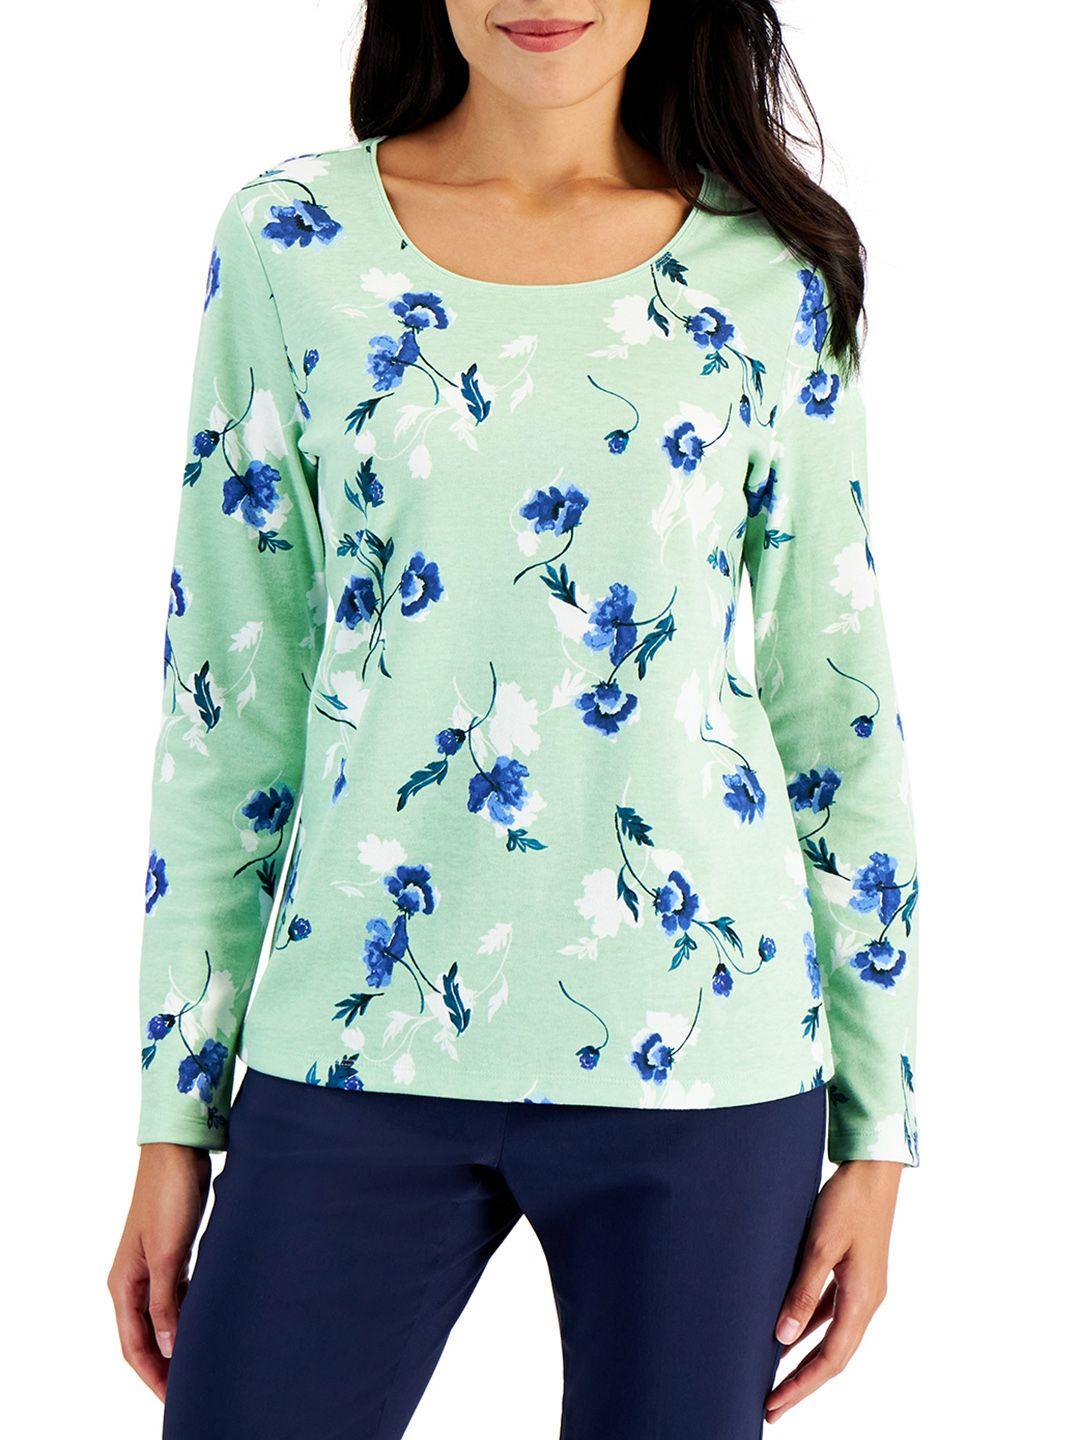 macy's karen scott women green & blue floral printed t-shirt